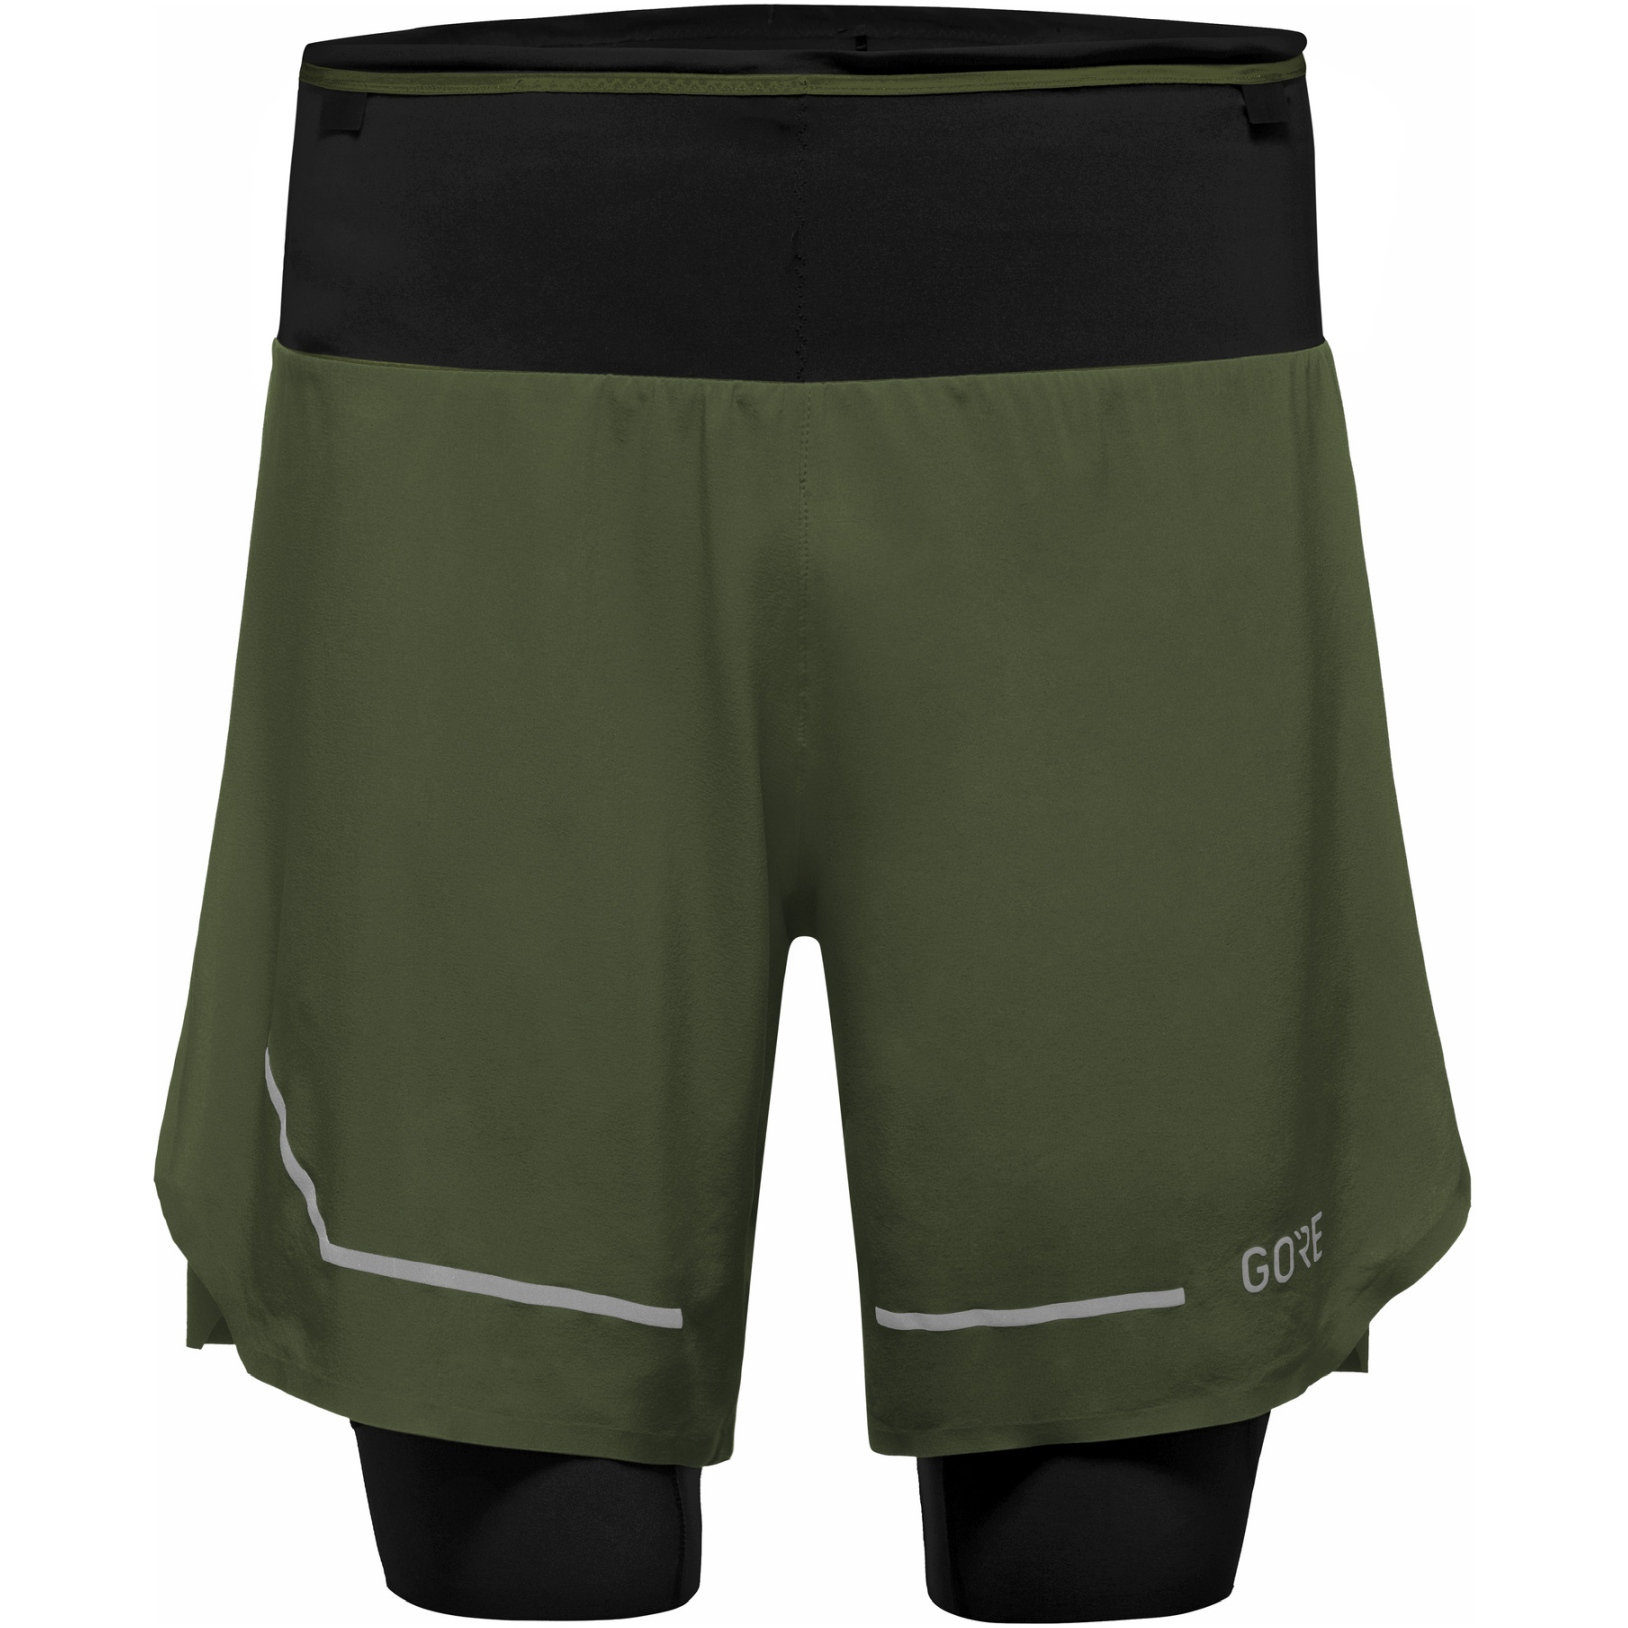 Foto de GOREWEAR Ultimate 2in1 Pantalones cortos de Correr - utility green BH00